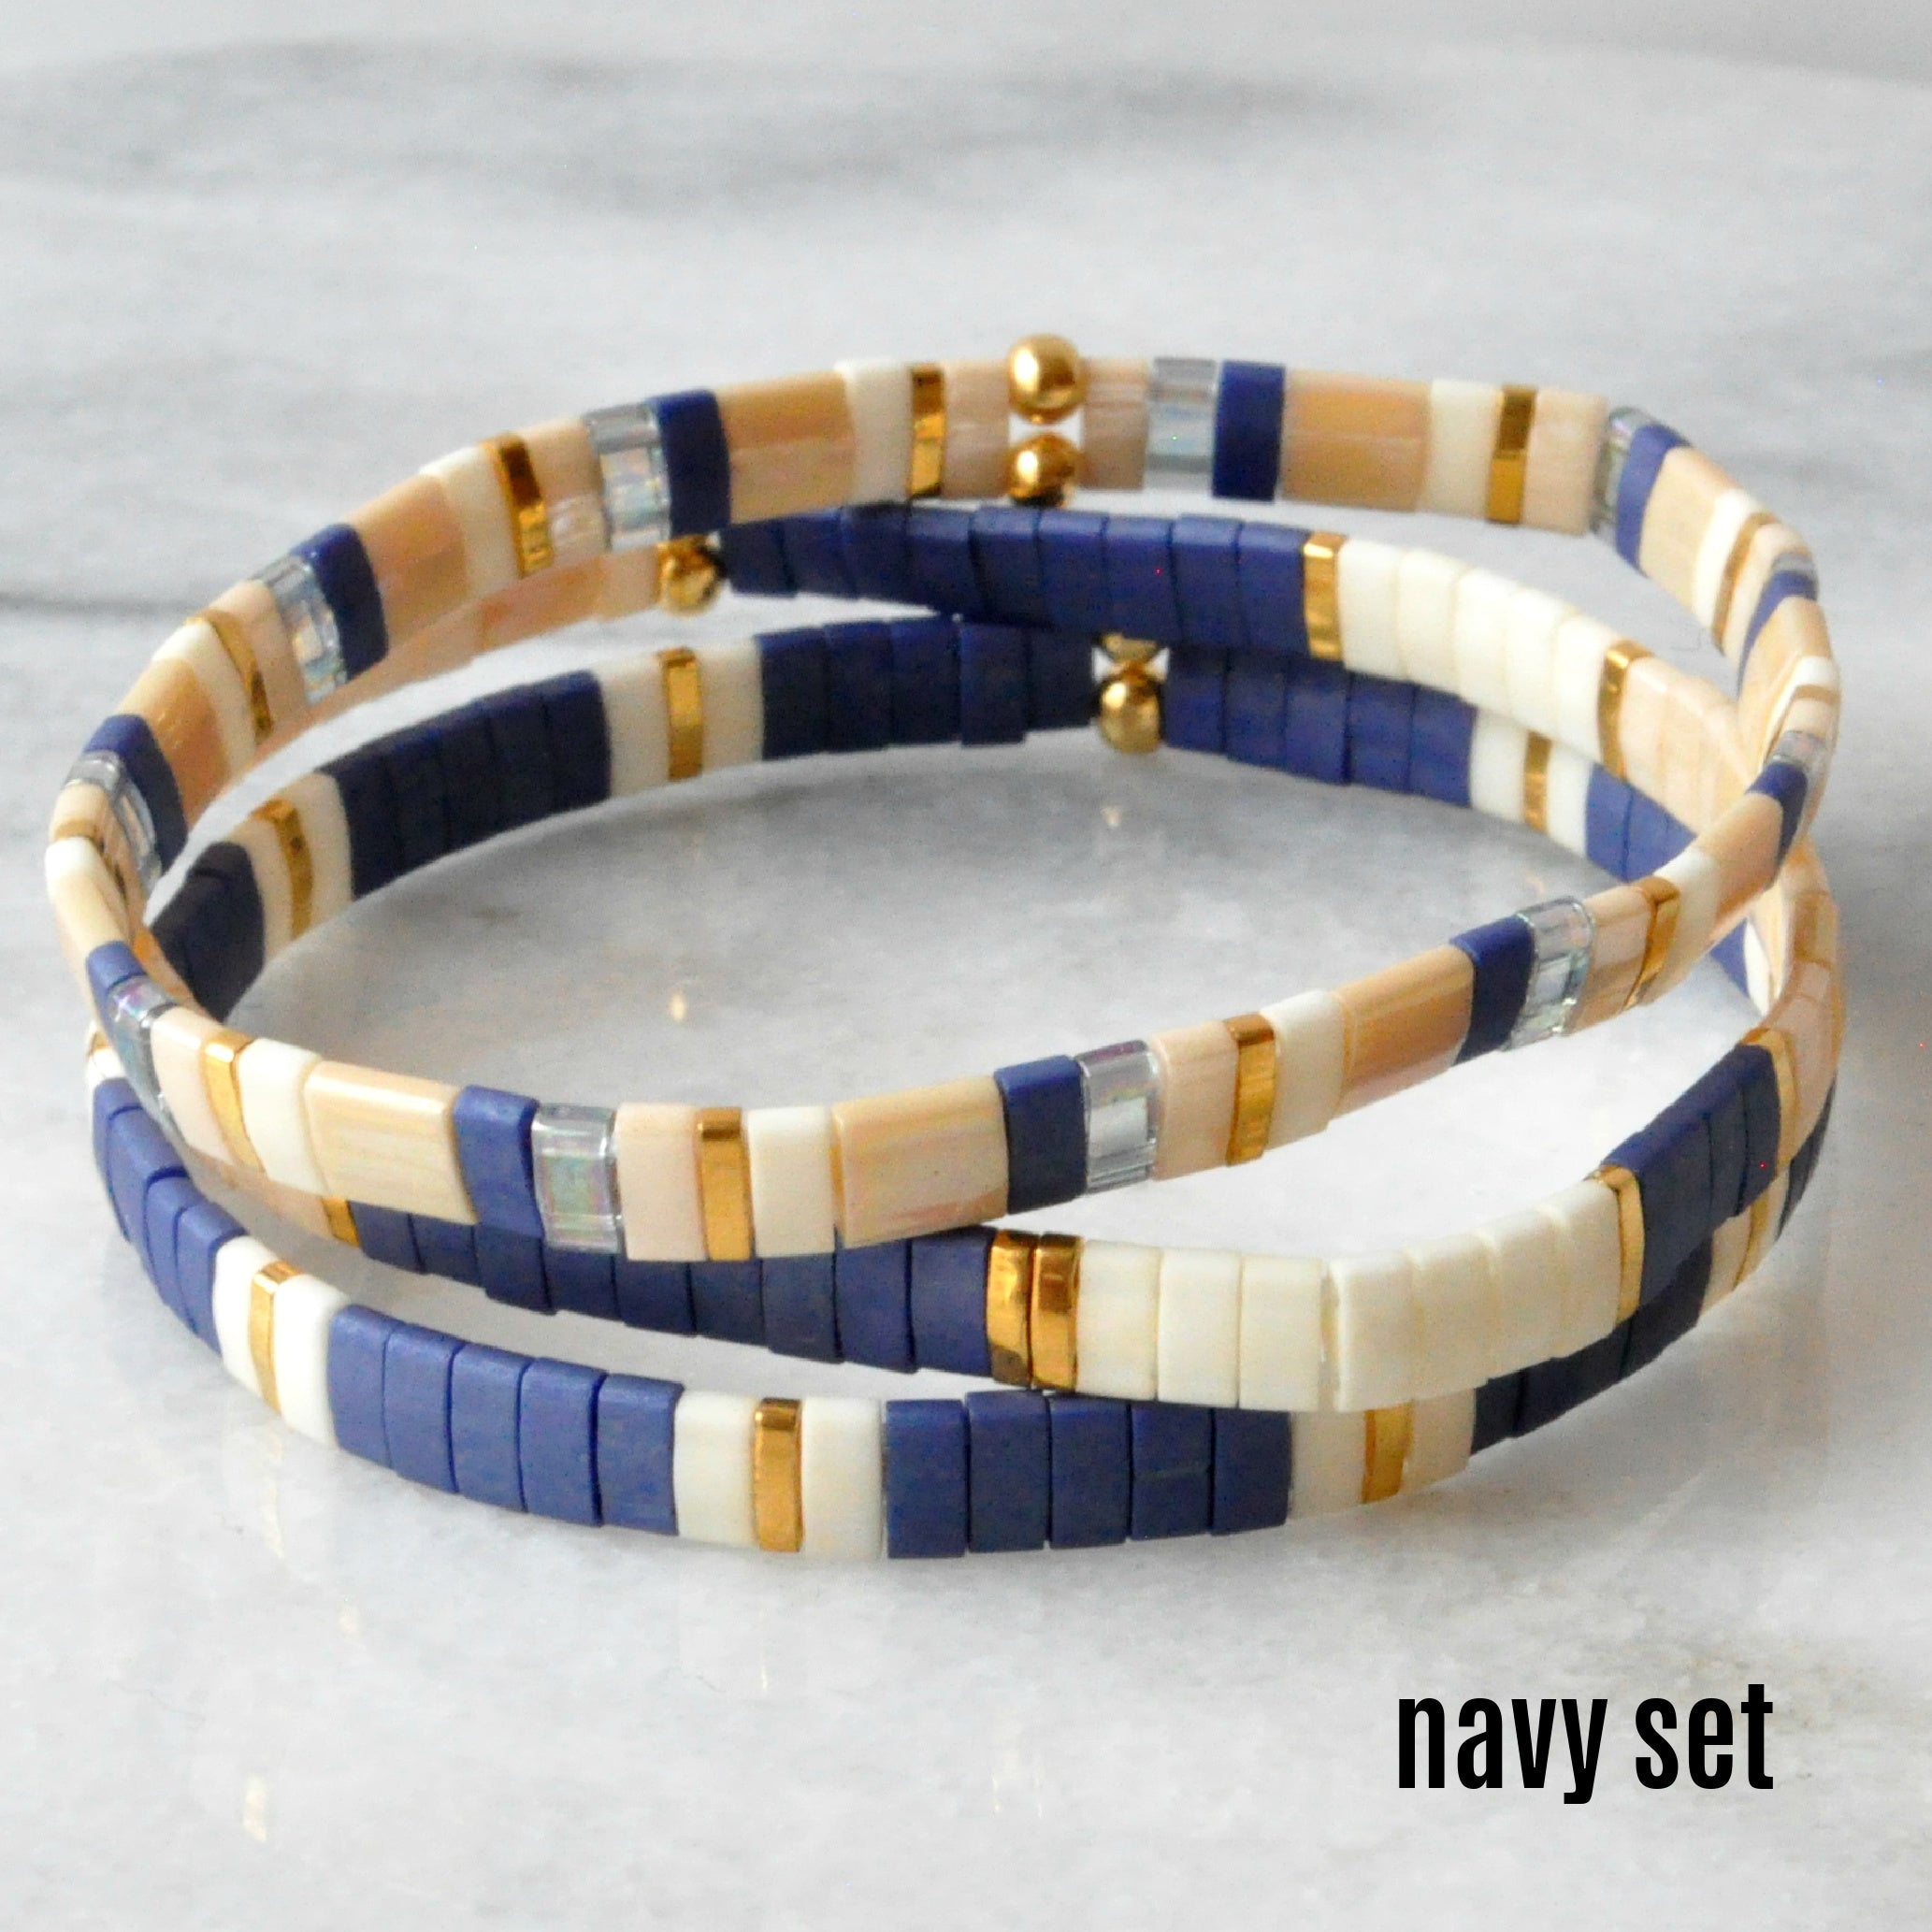 Libby & Smee stretch tile bracelet sets